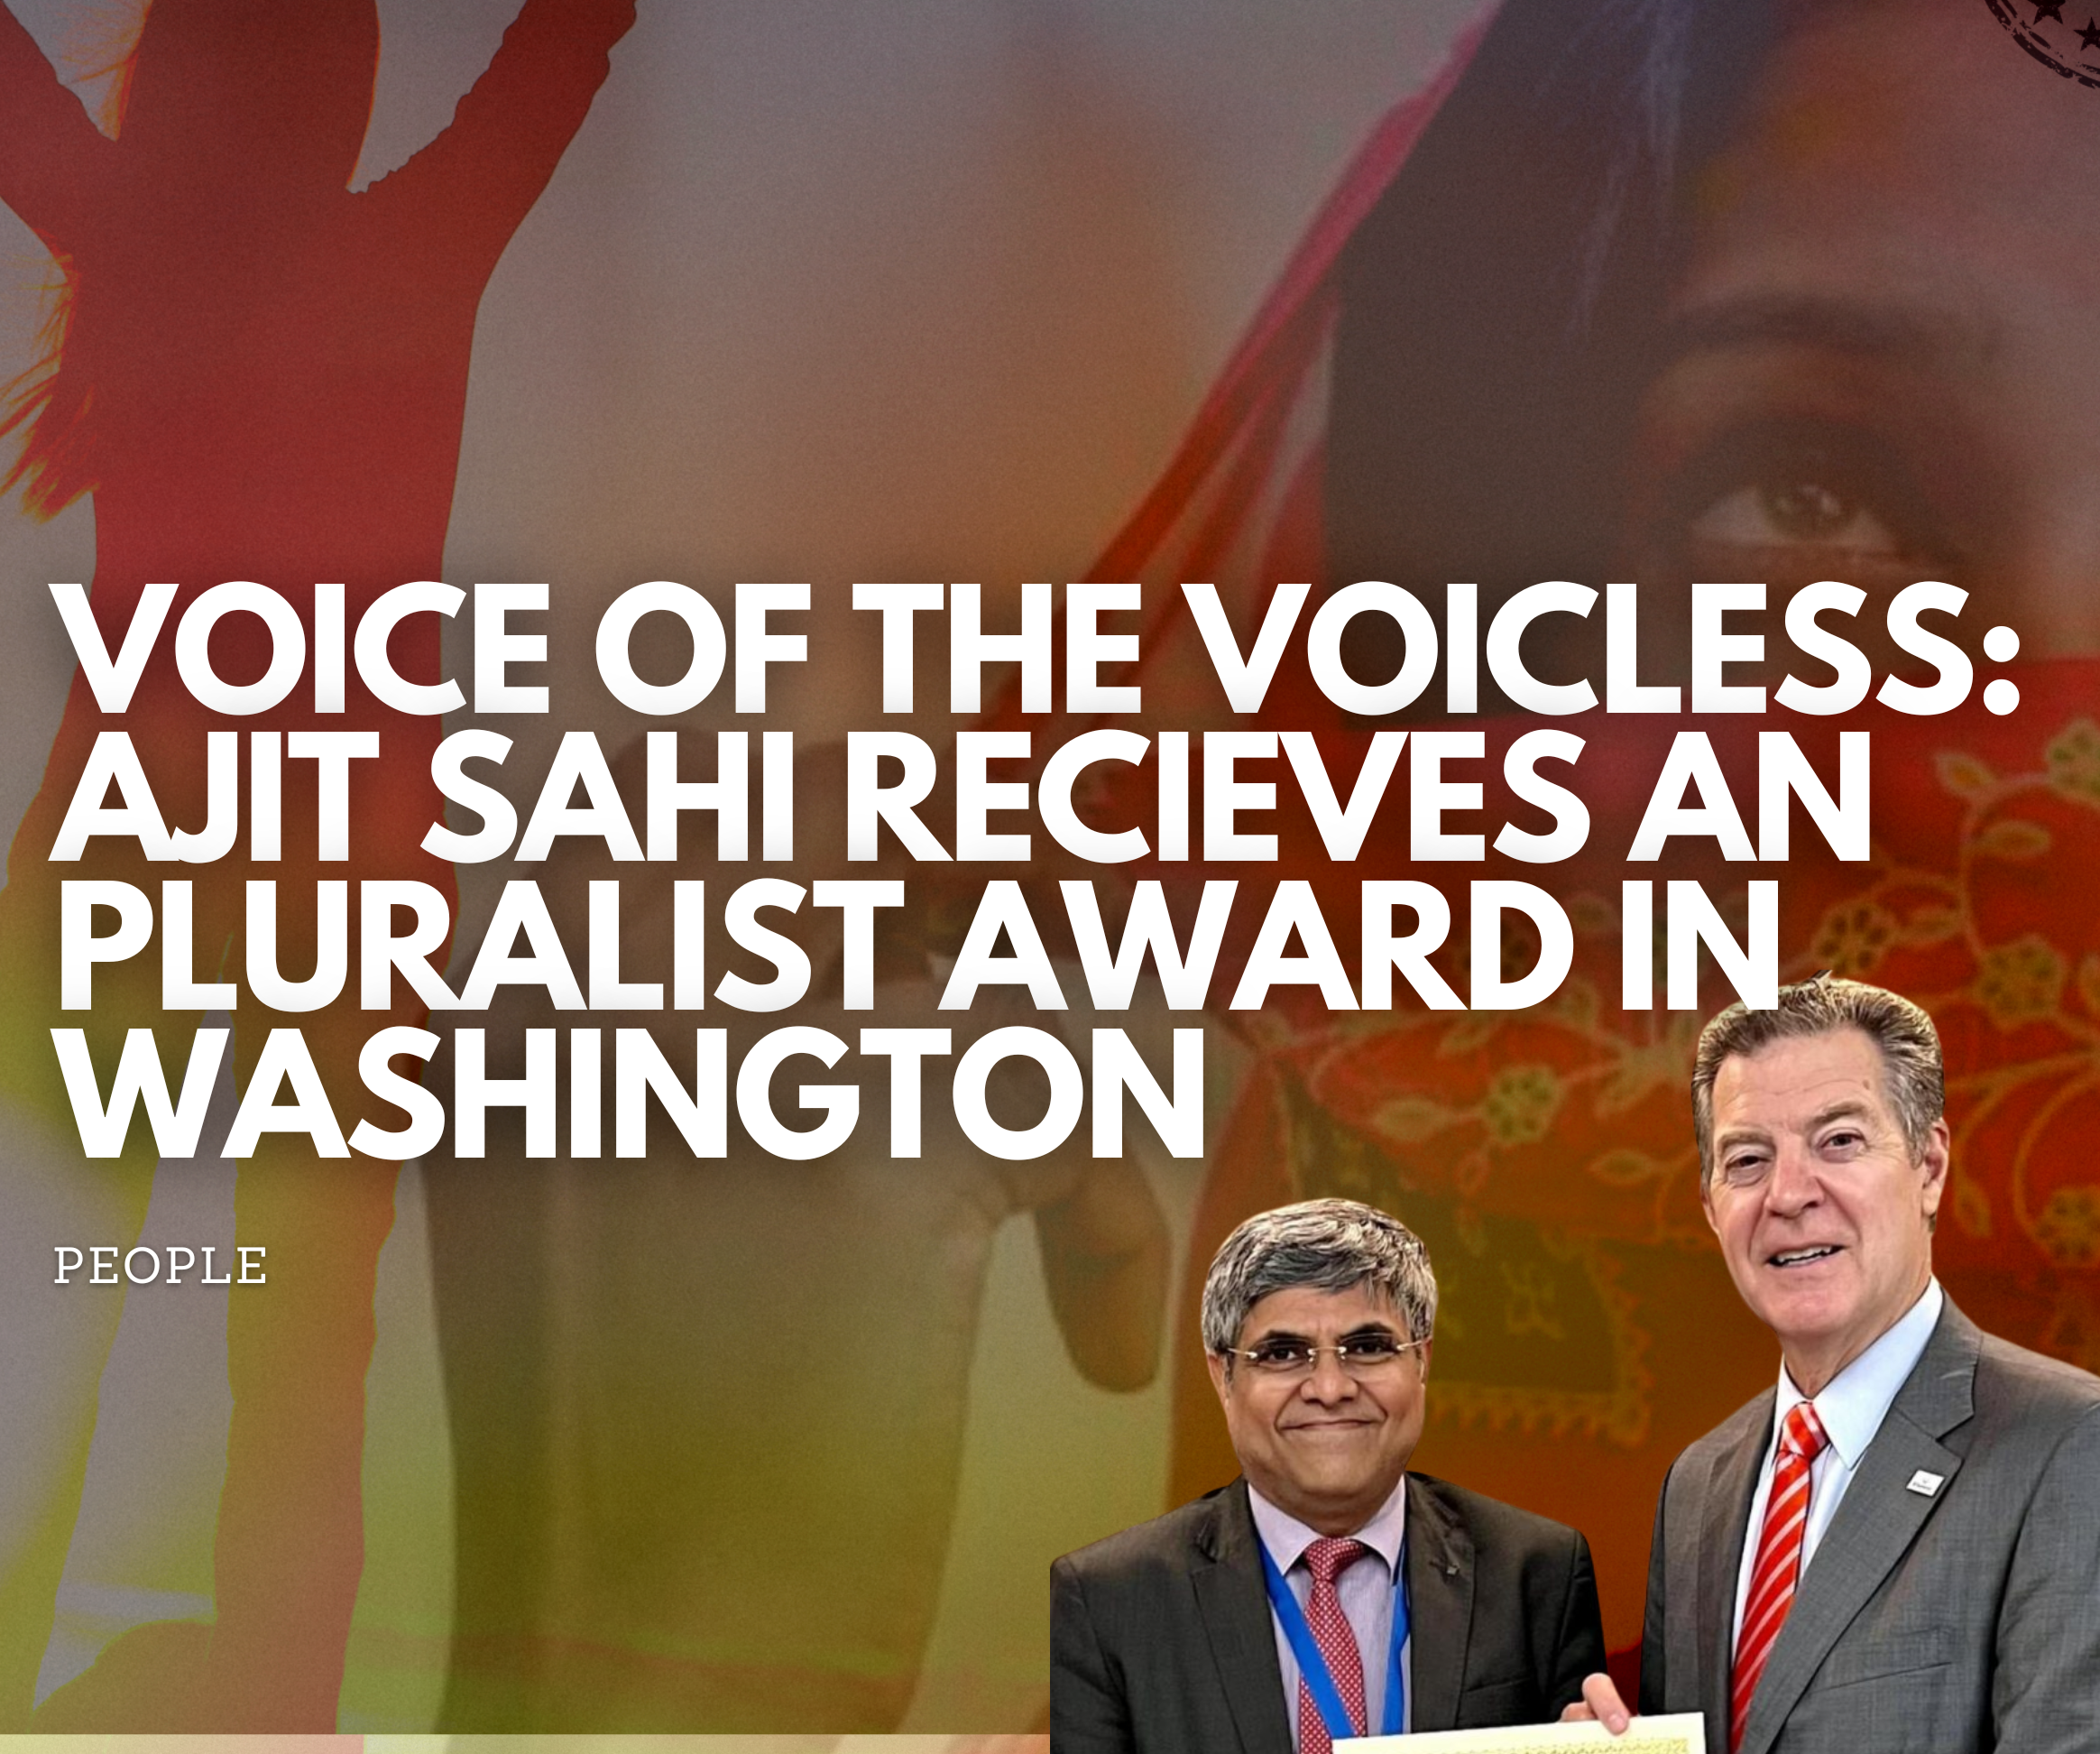 Aajit Sahi recieves pluralist award in Washington